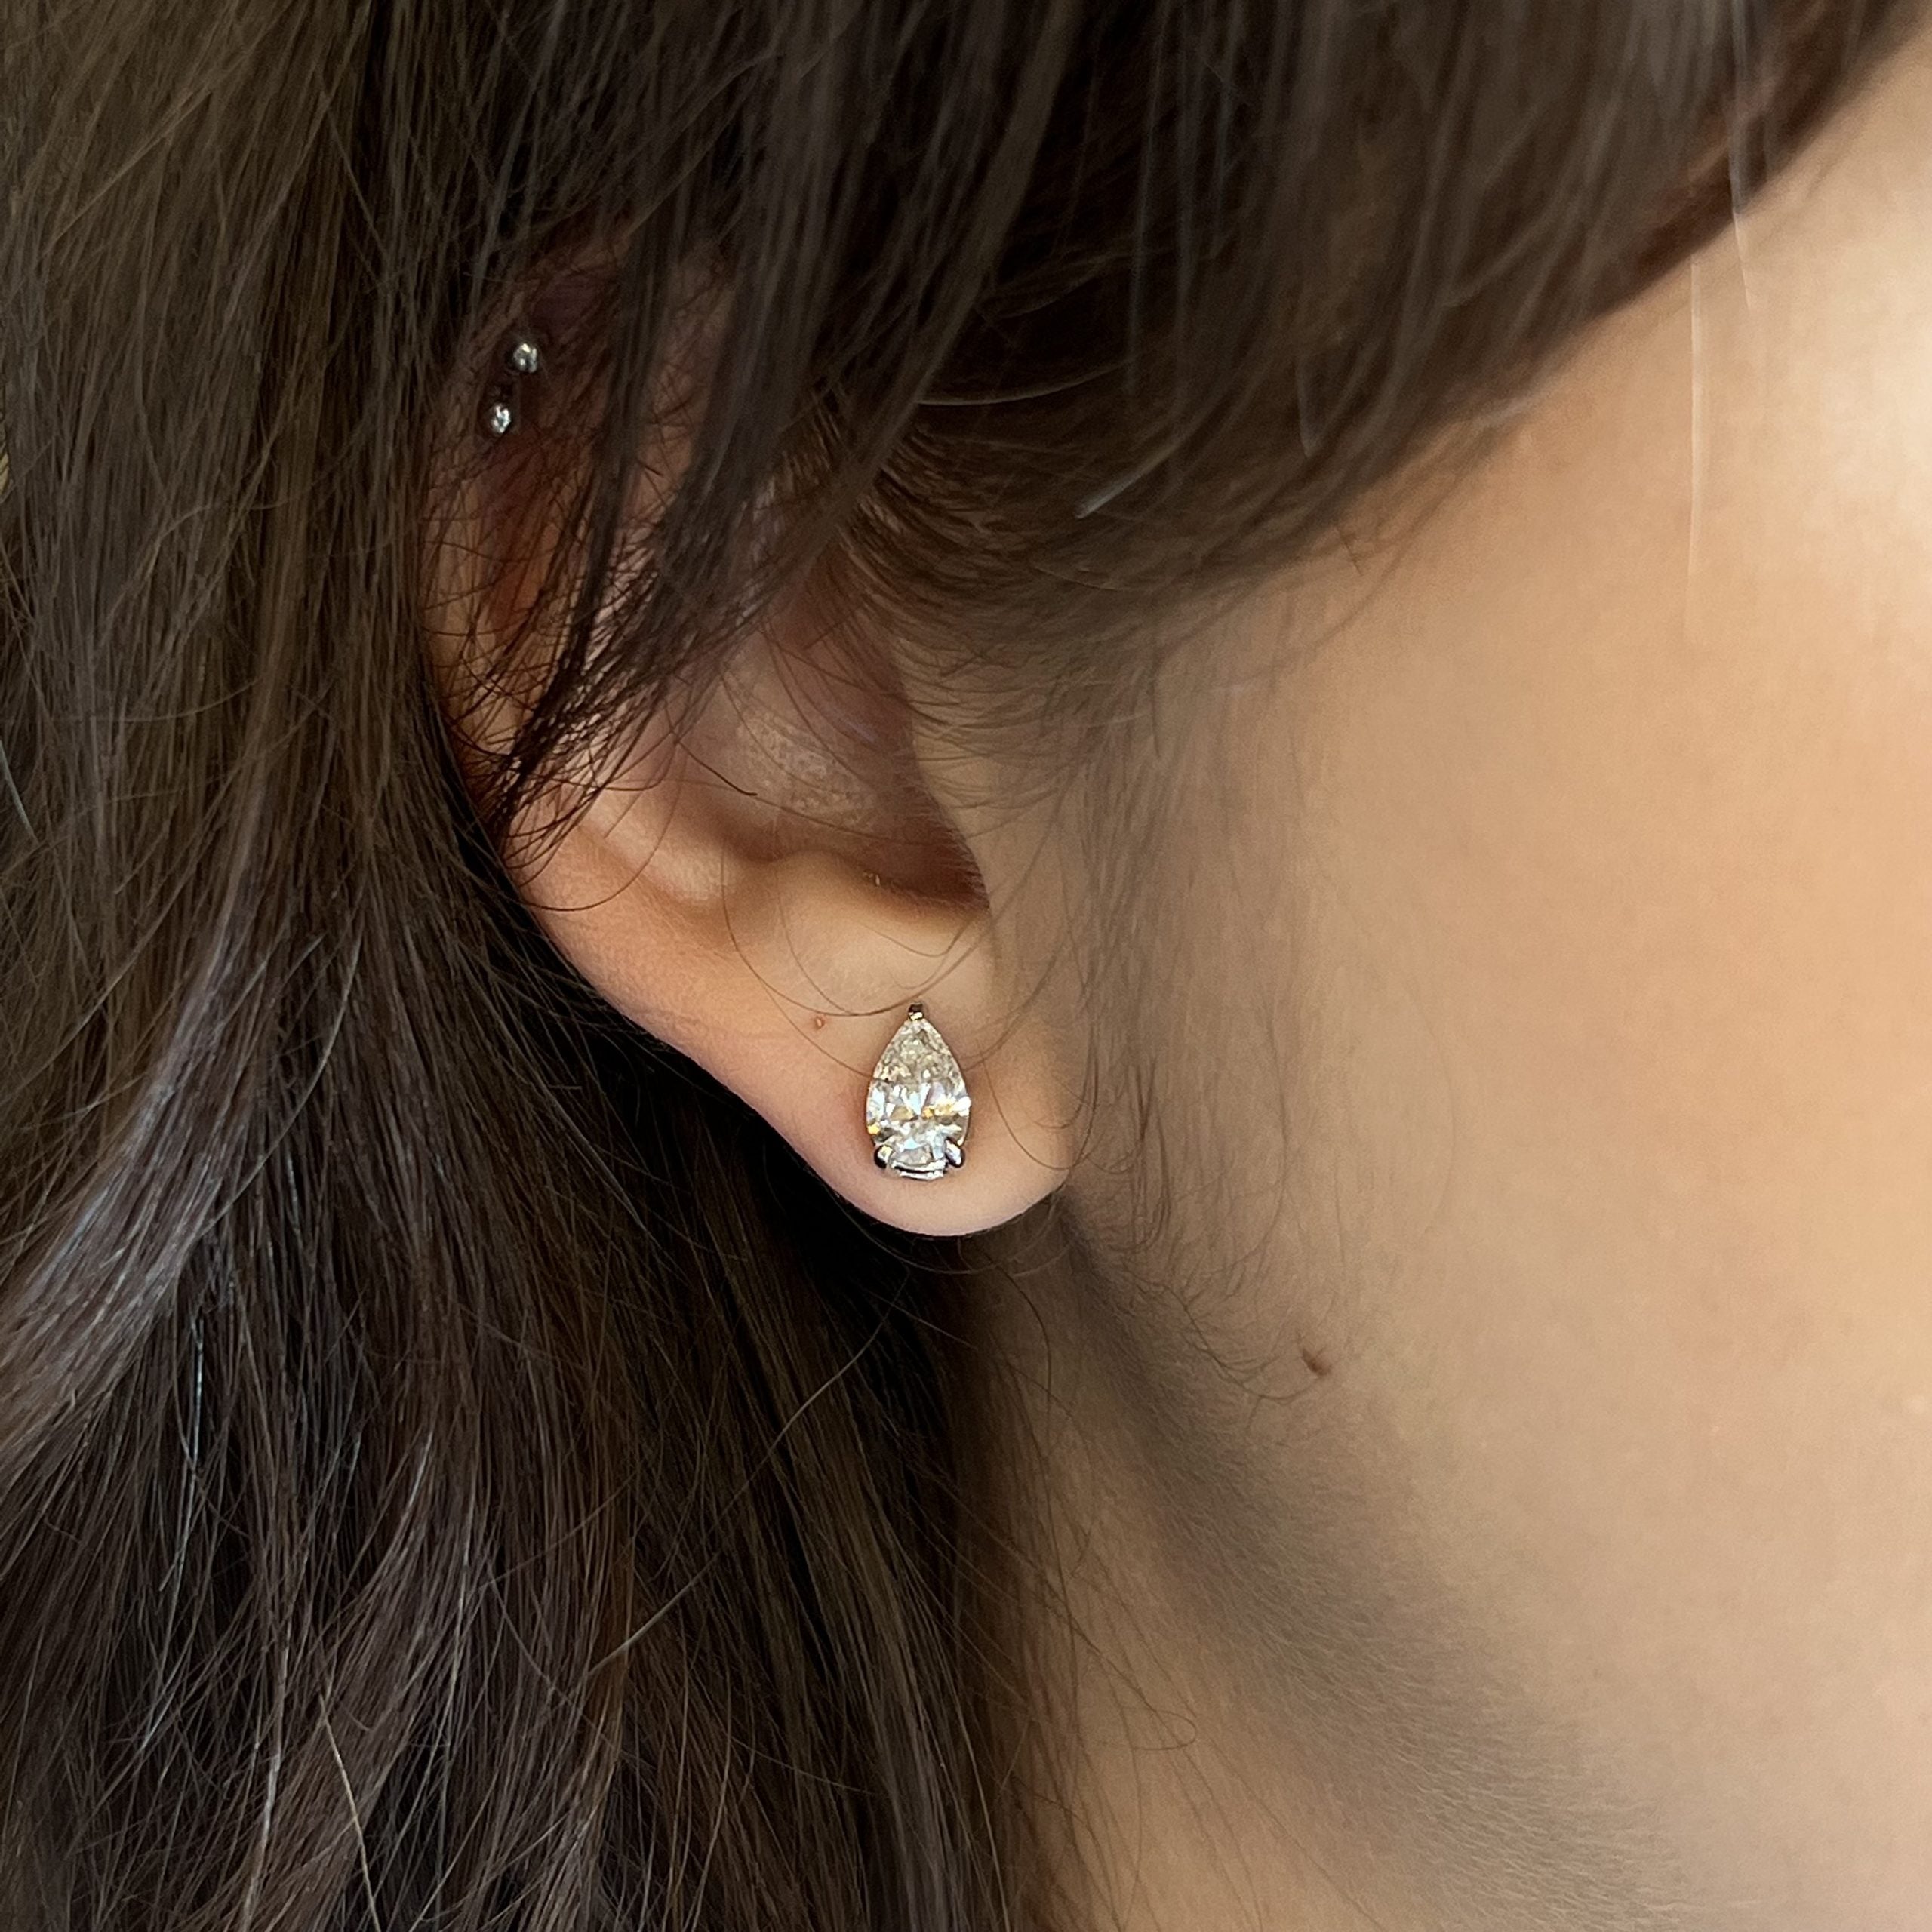 Modern Pear Cut Diamond Stud Earrings in 14k White Gold - Filigree